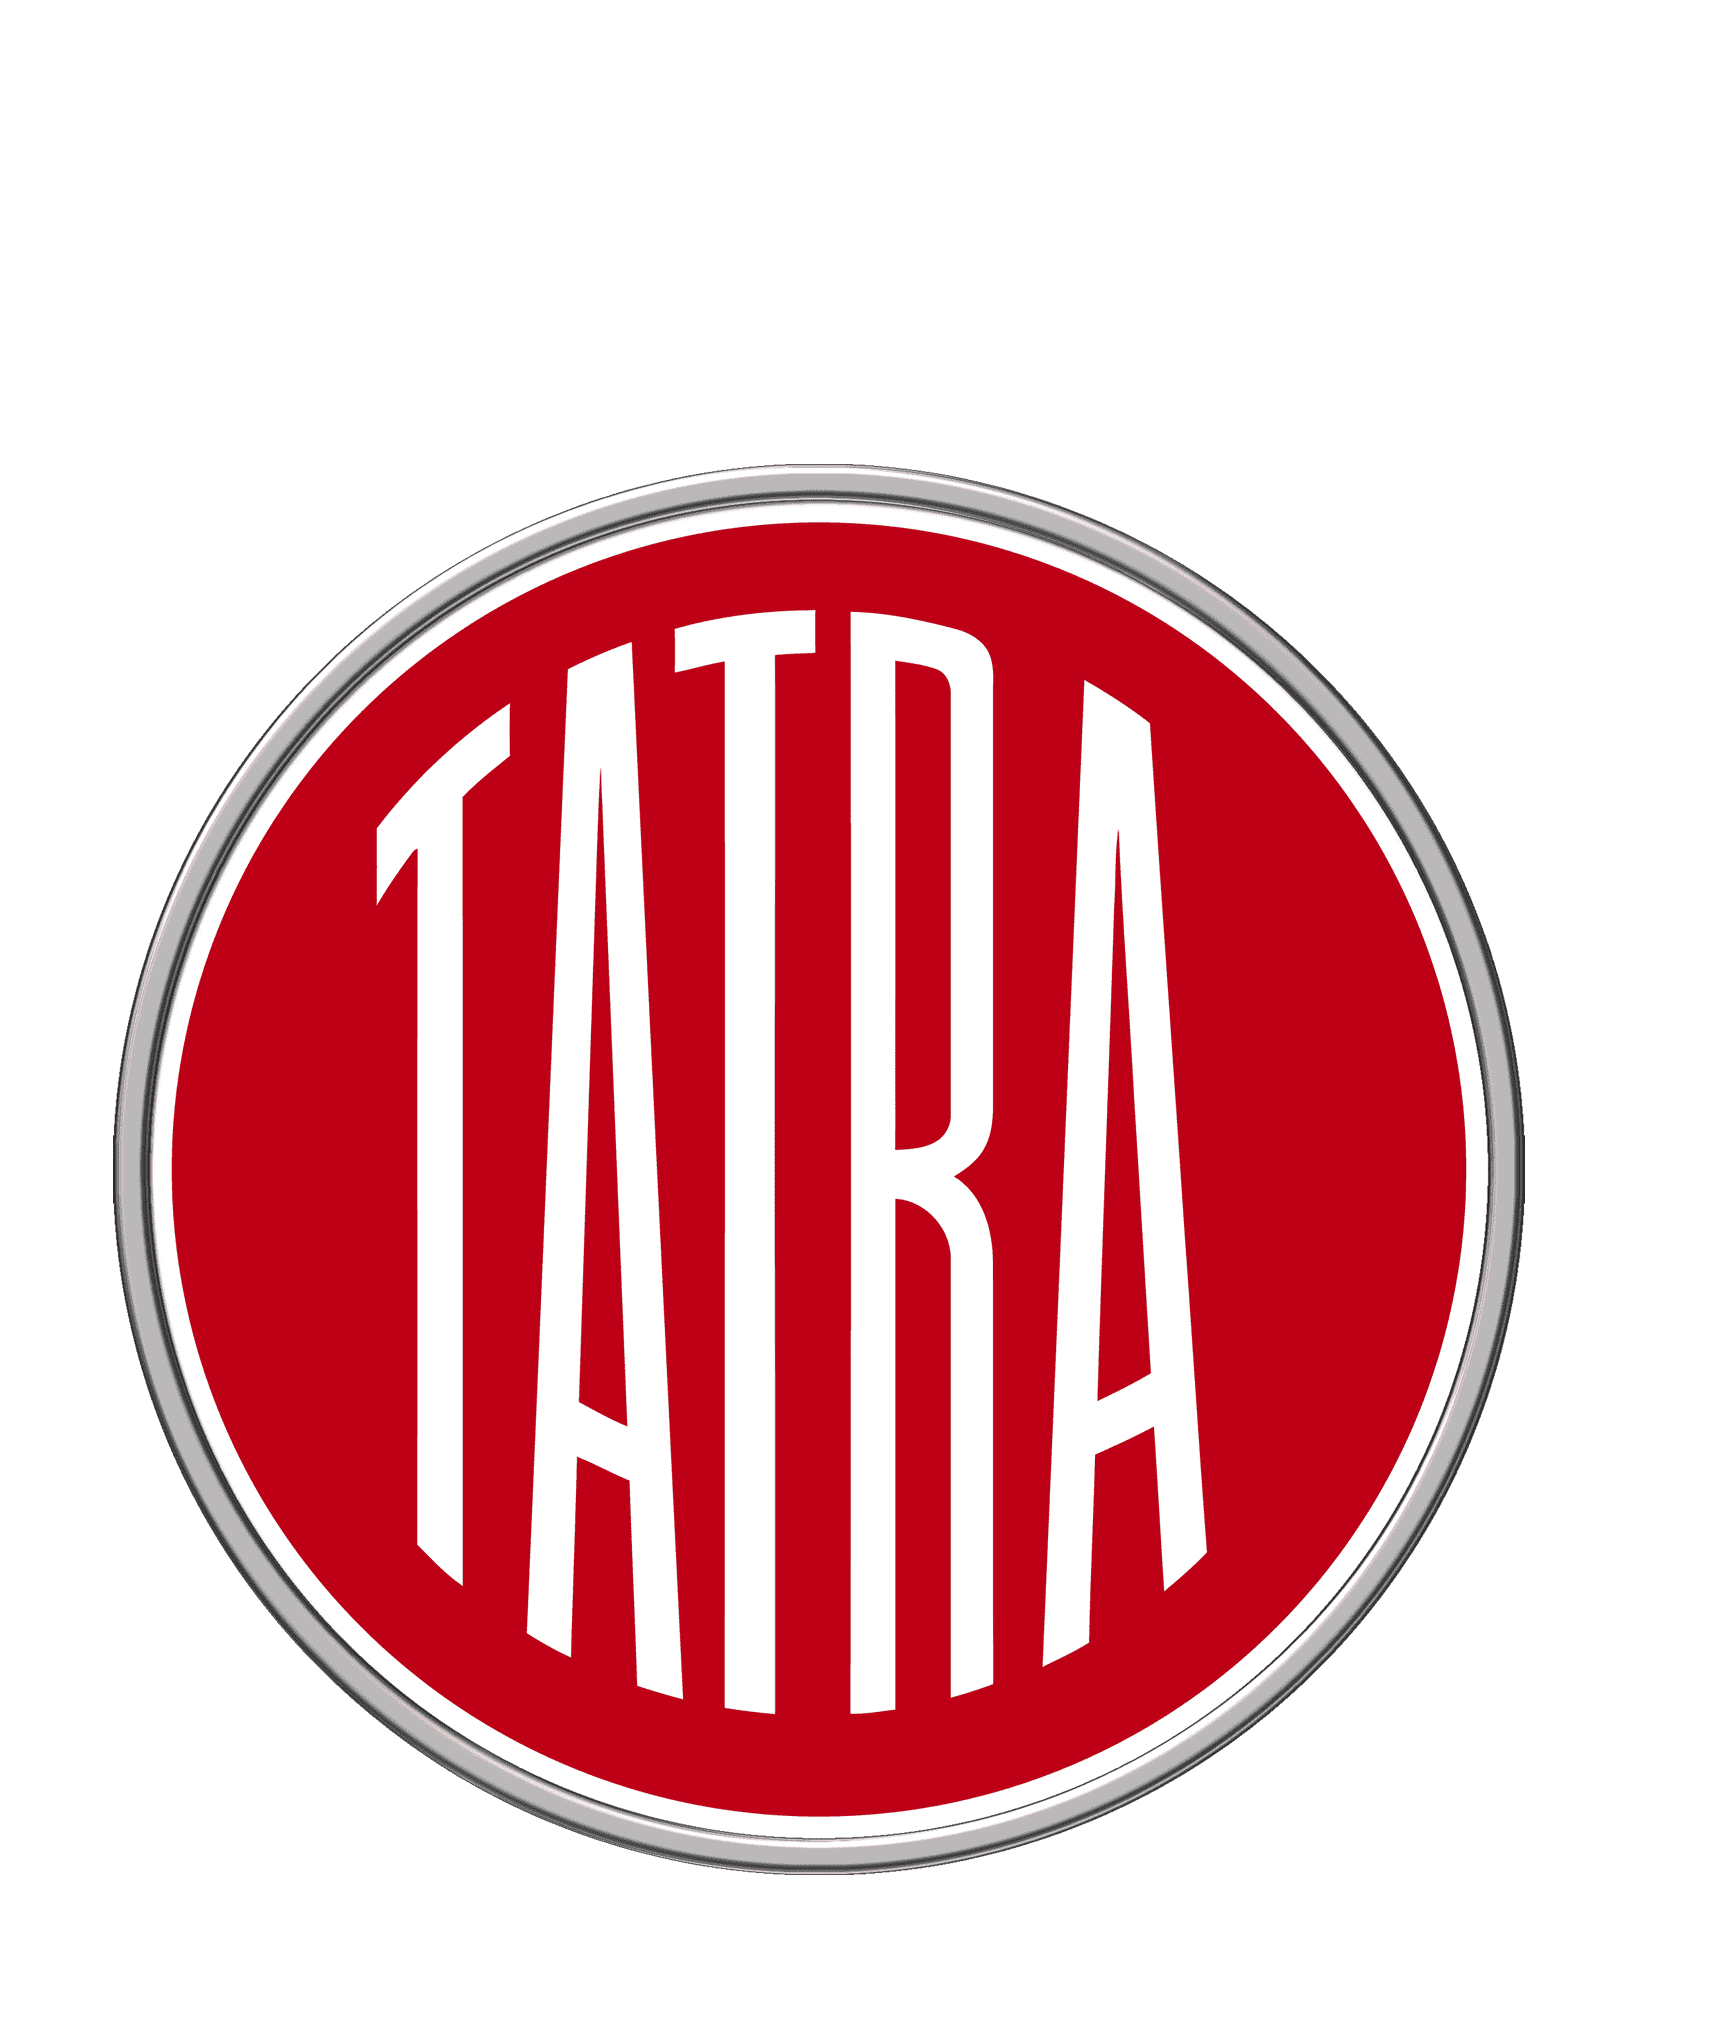 Tatra logo image